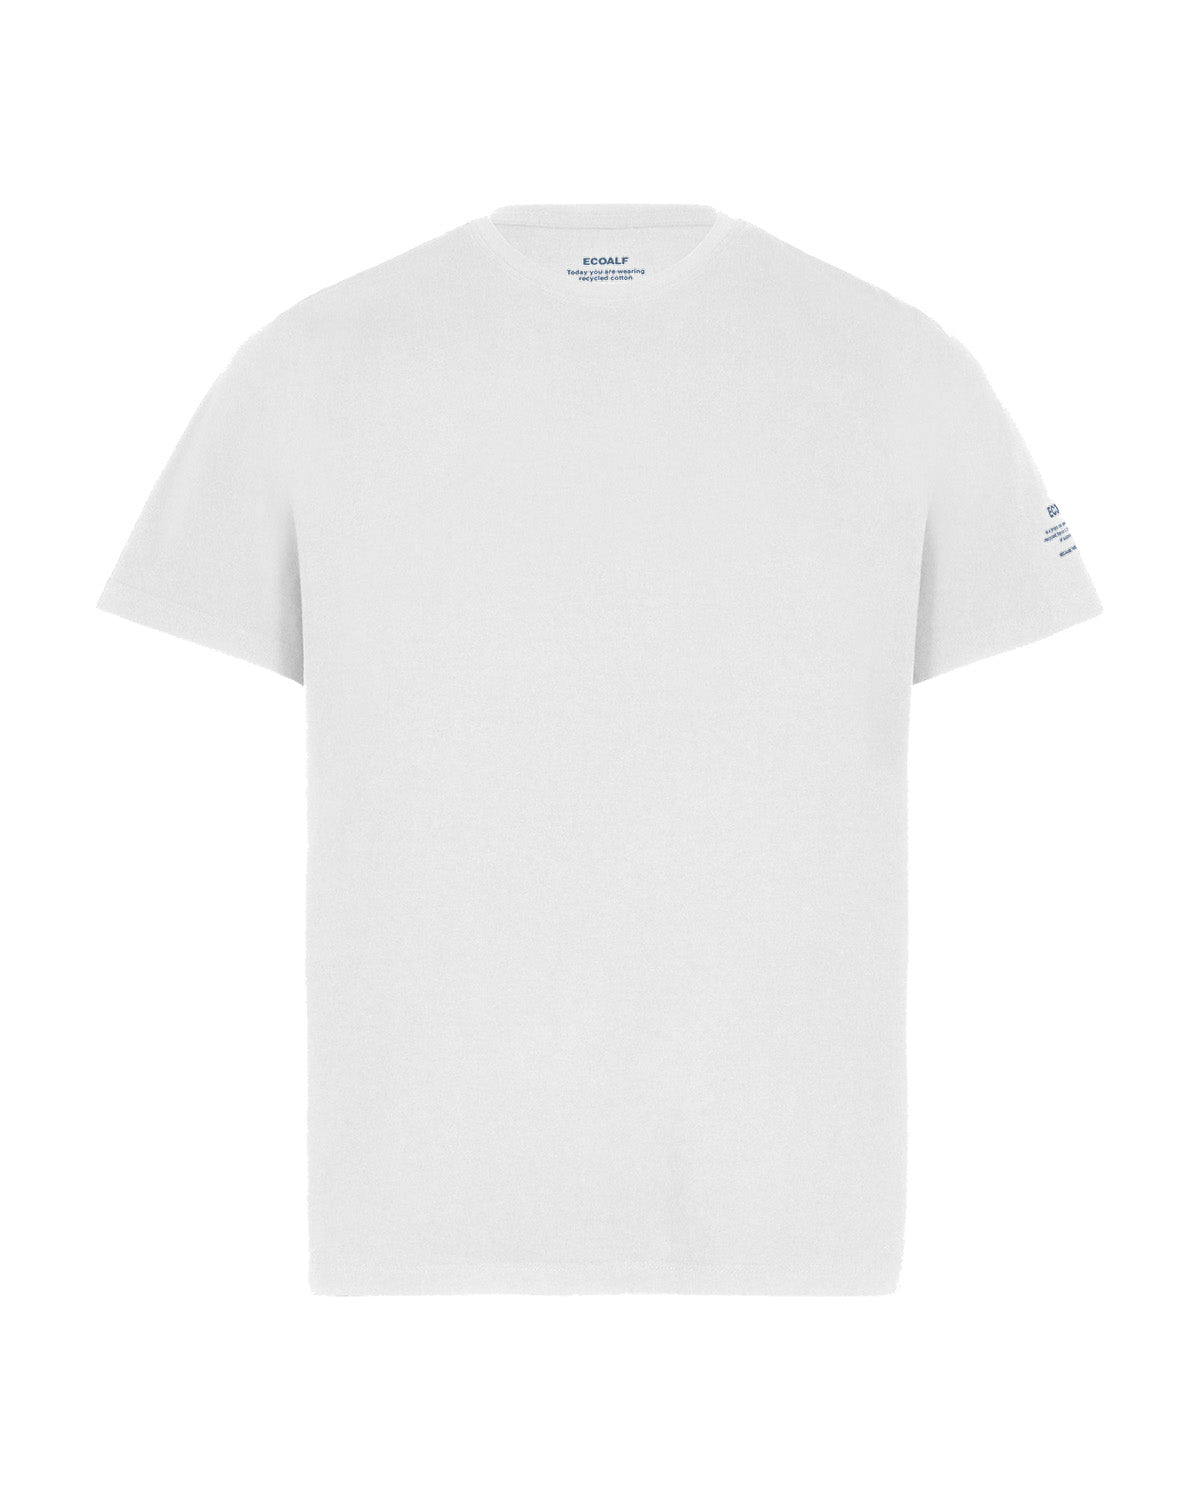 Ecoalf - Sustanalf T-Shirt Man White - Nahmoo